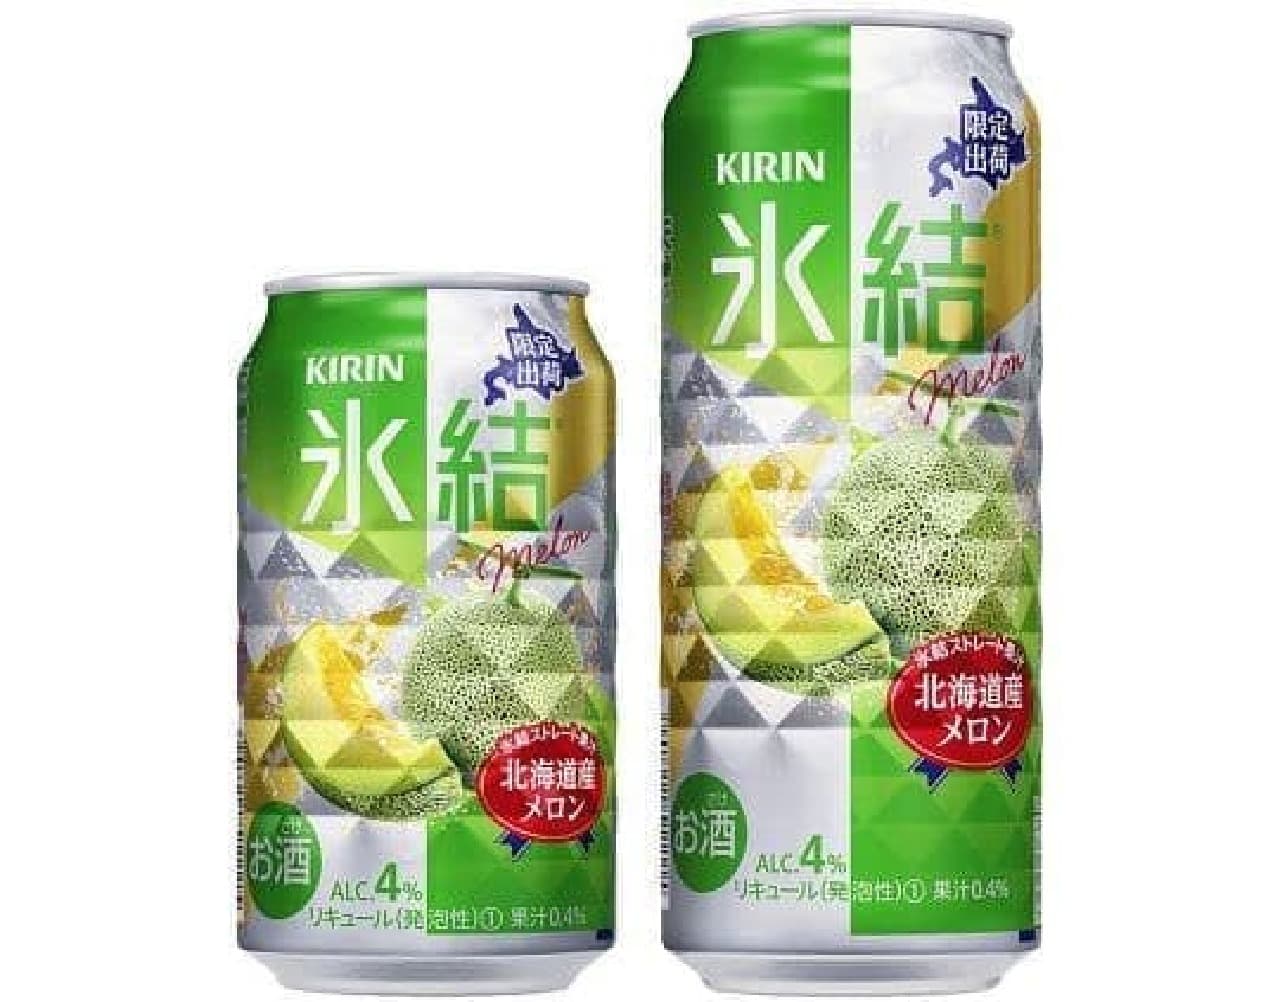 Kirin Beer "Kirin Freeze Hokkaido Melon"